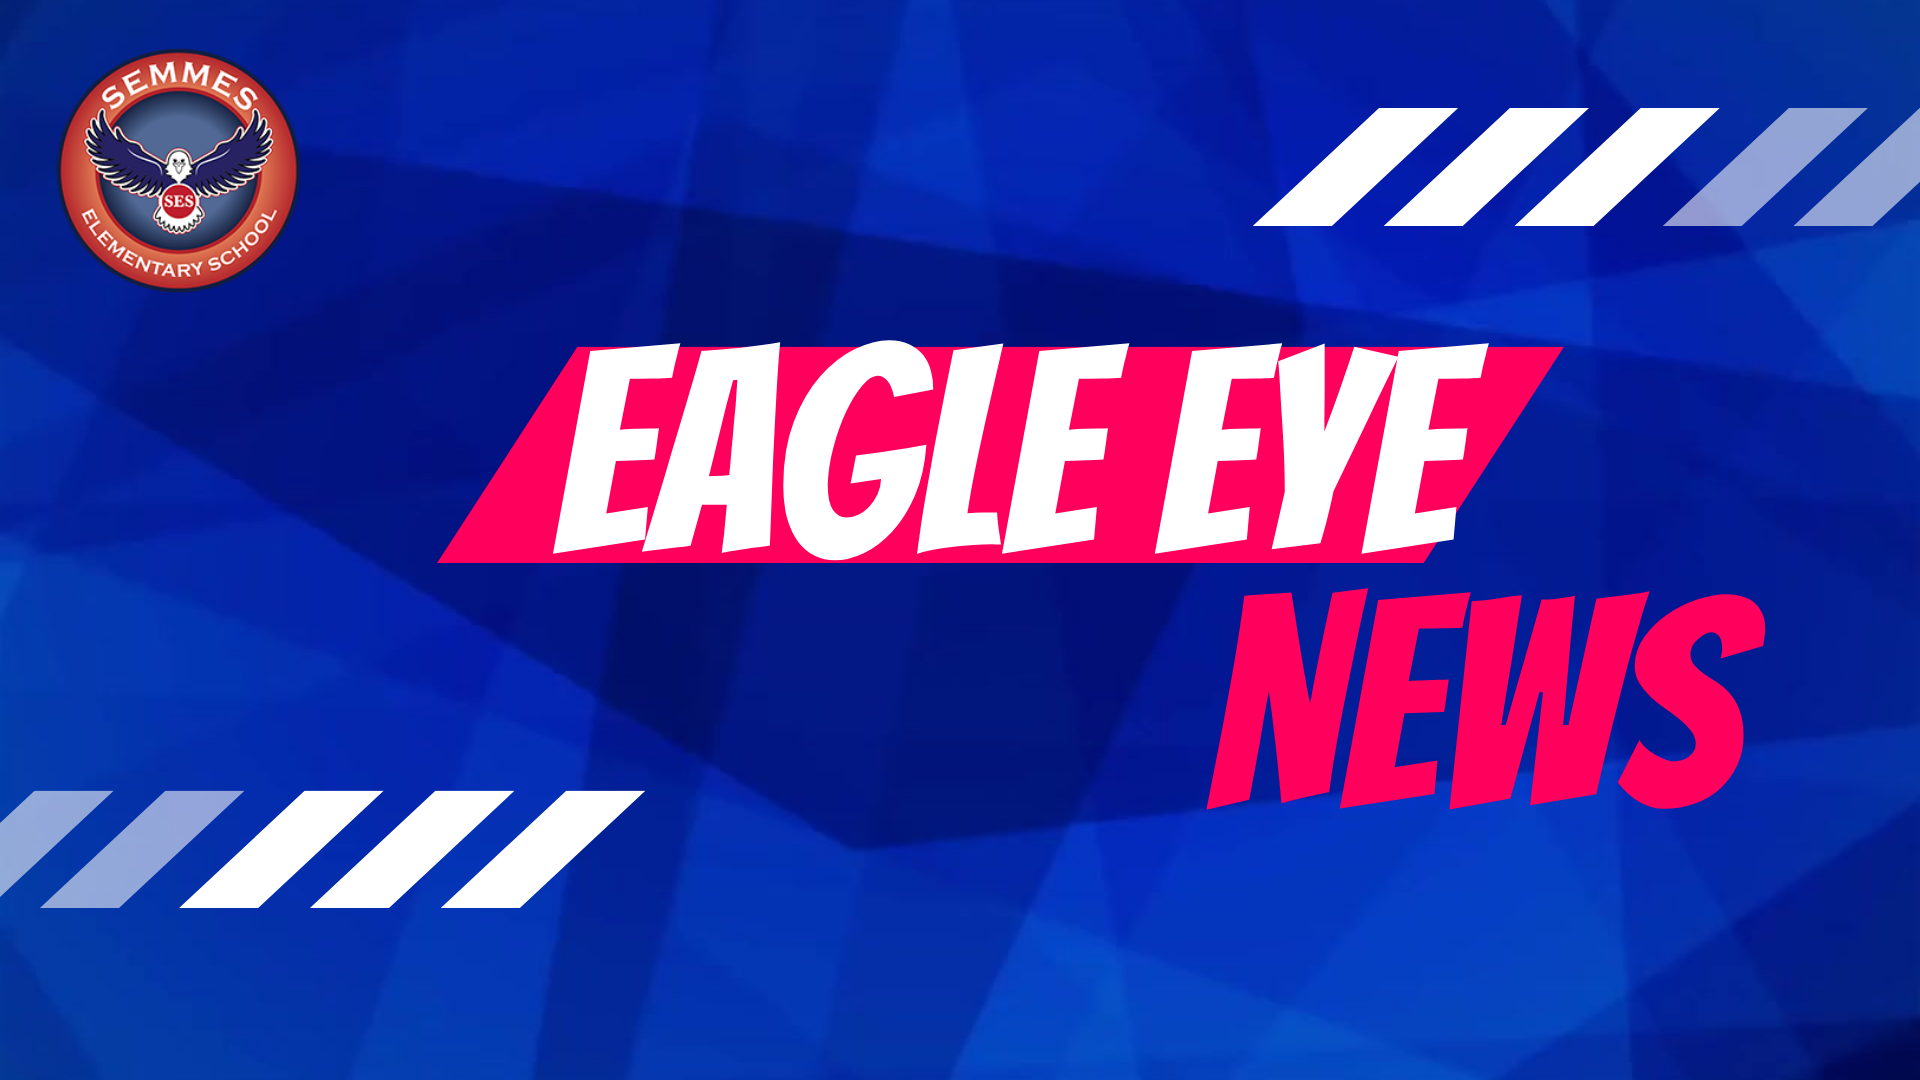 Eagle Eye news